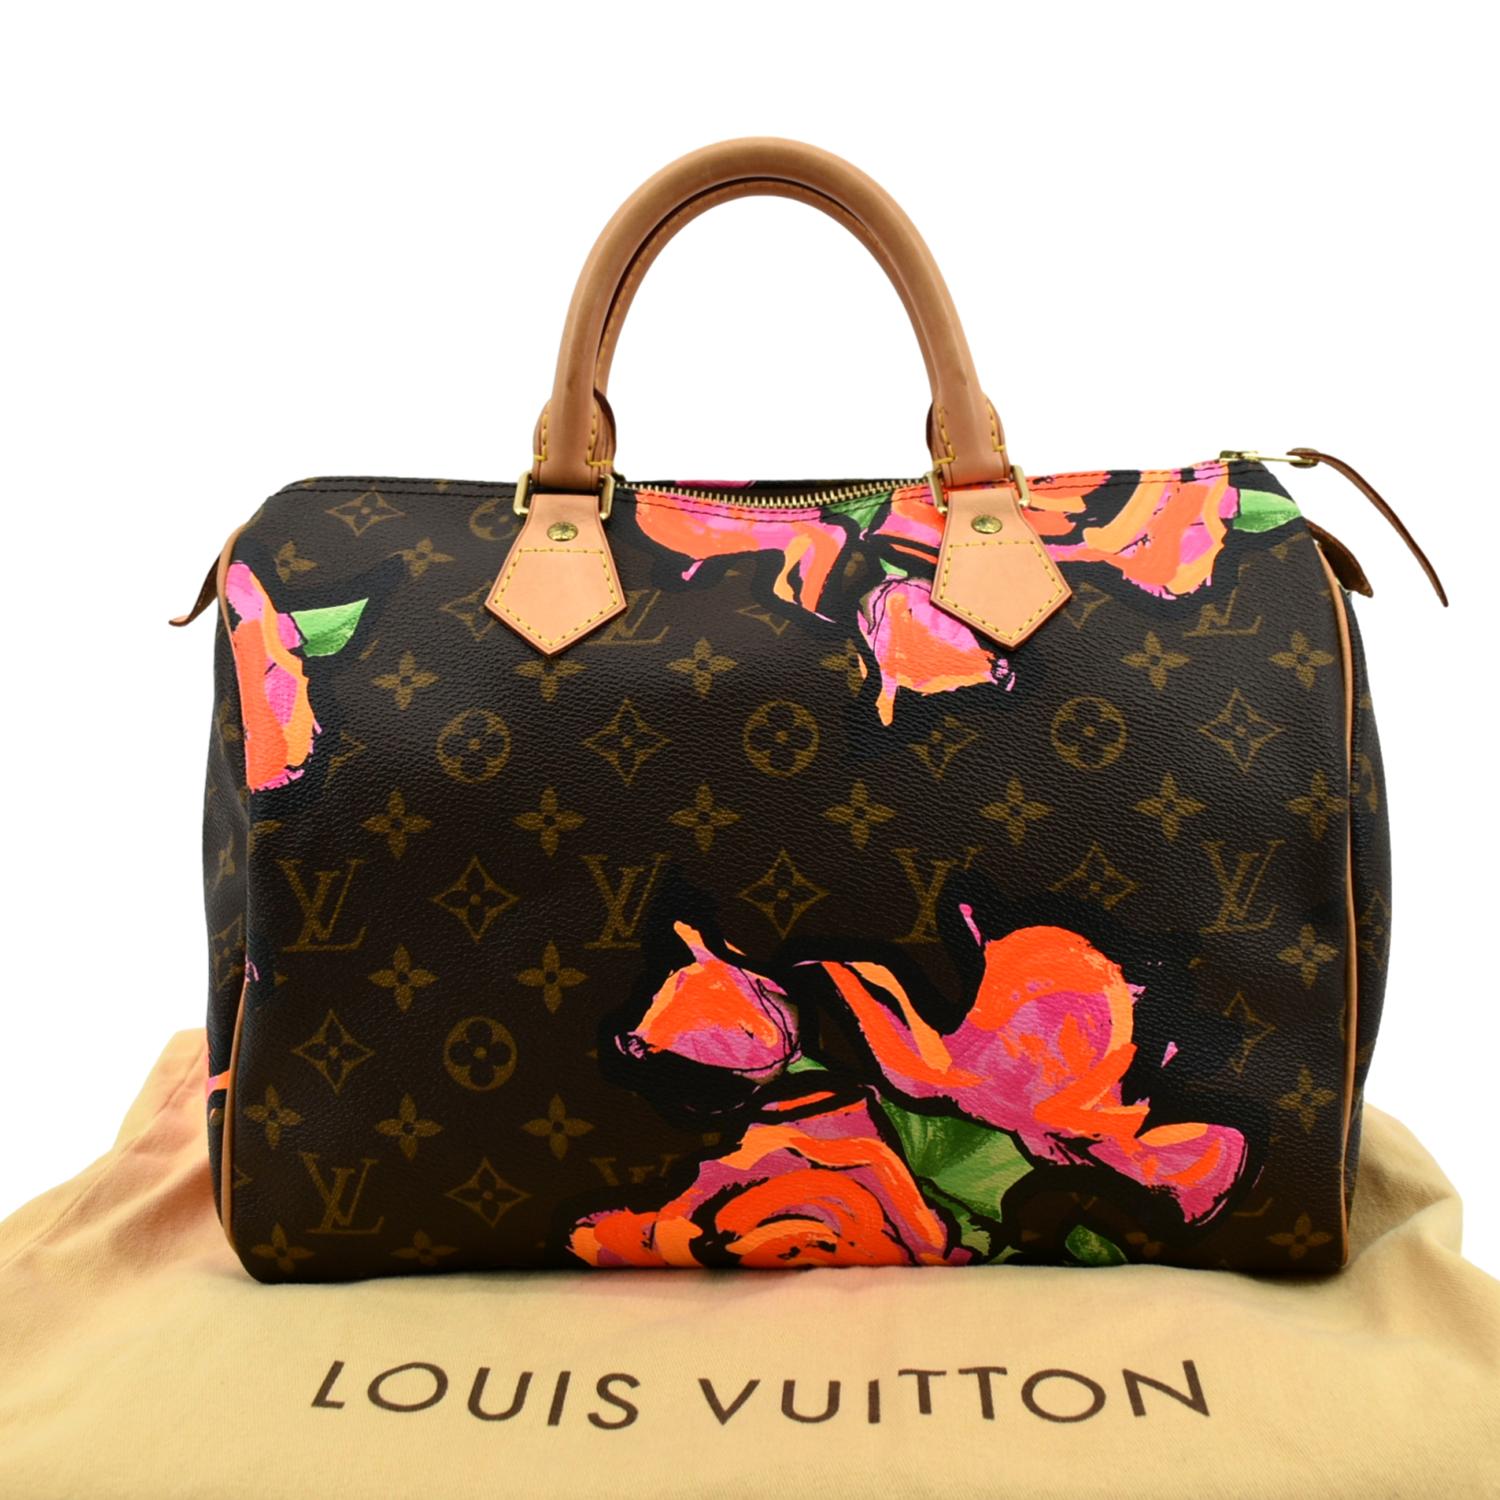 Louis Vuitton Speedy Bandoulière 25 Floral Limited Edition